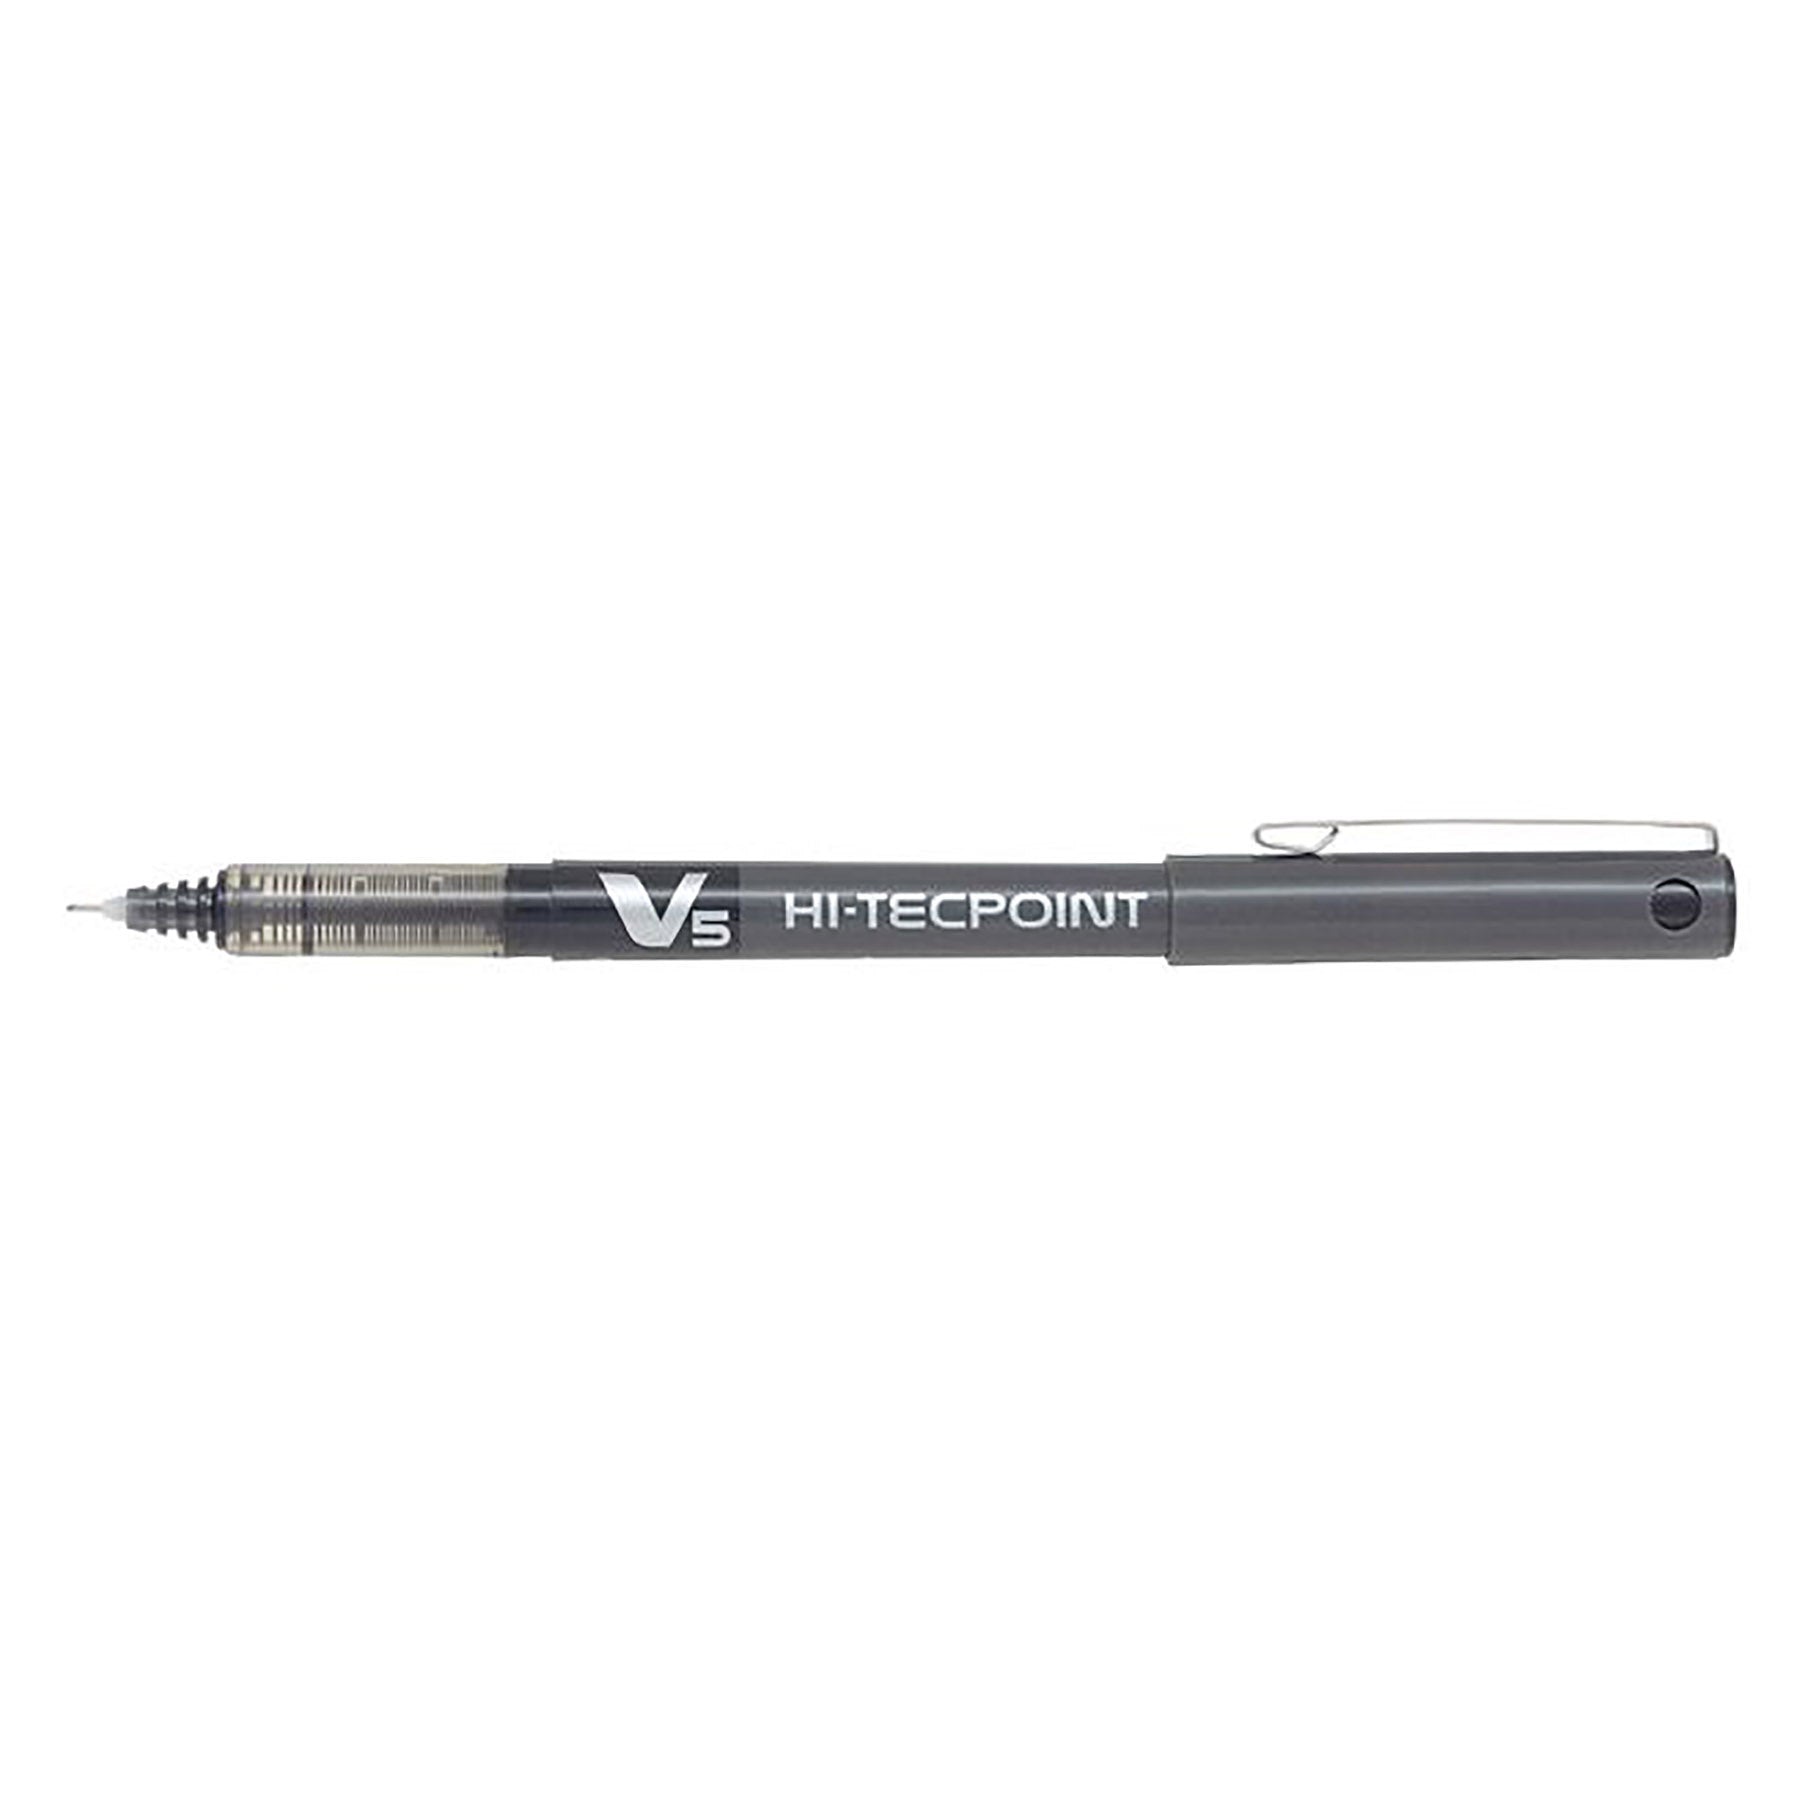 Pilot Hi-Tecpoint Pen with Cap - Black Ink 0.5mm